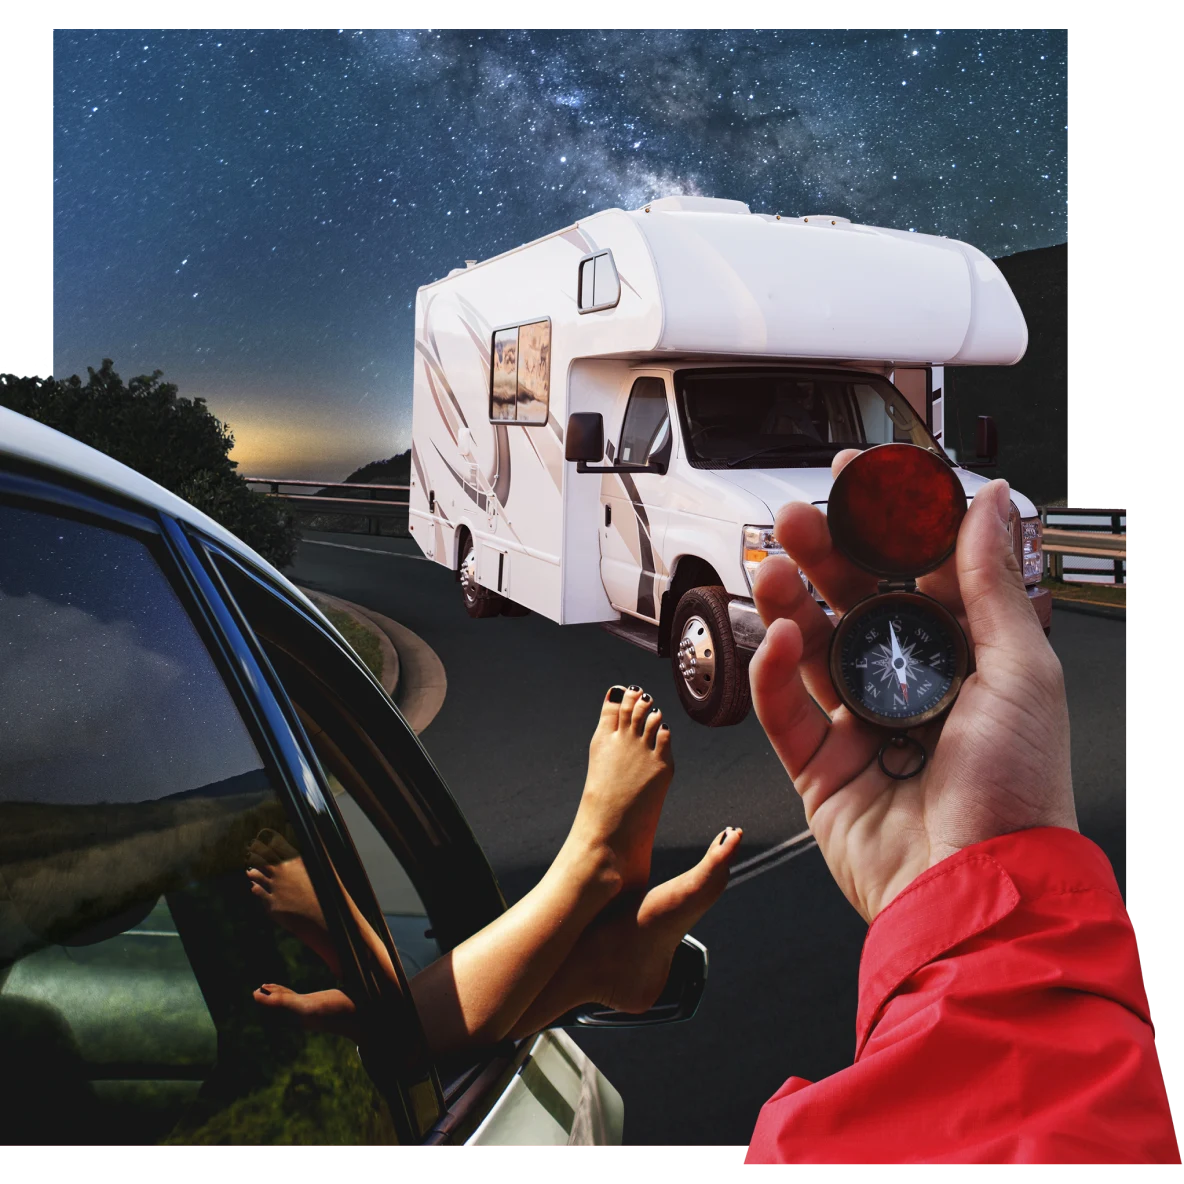 Füße mit schwarzem Nagellack werden aus einem Autofenster hinausgestreckt. Eine Hand mit rotem Ärmel hält einen Kompass. Ein weißer Campingbus steht in der Abenddämmerung an einem Aussichtspunkt mit Blick auf ein Tal und den sternenbedeckten Himmel.